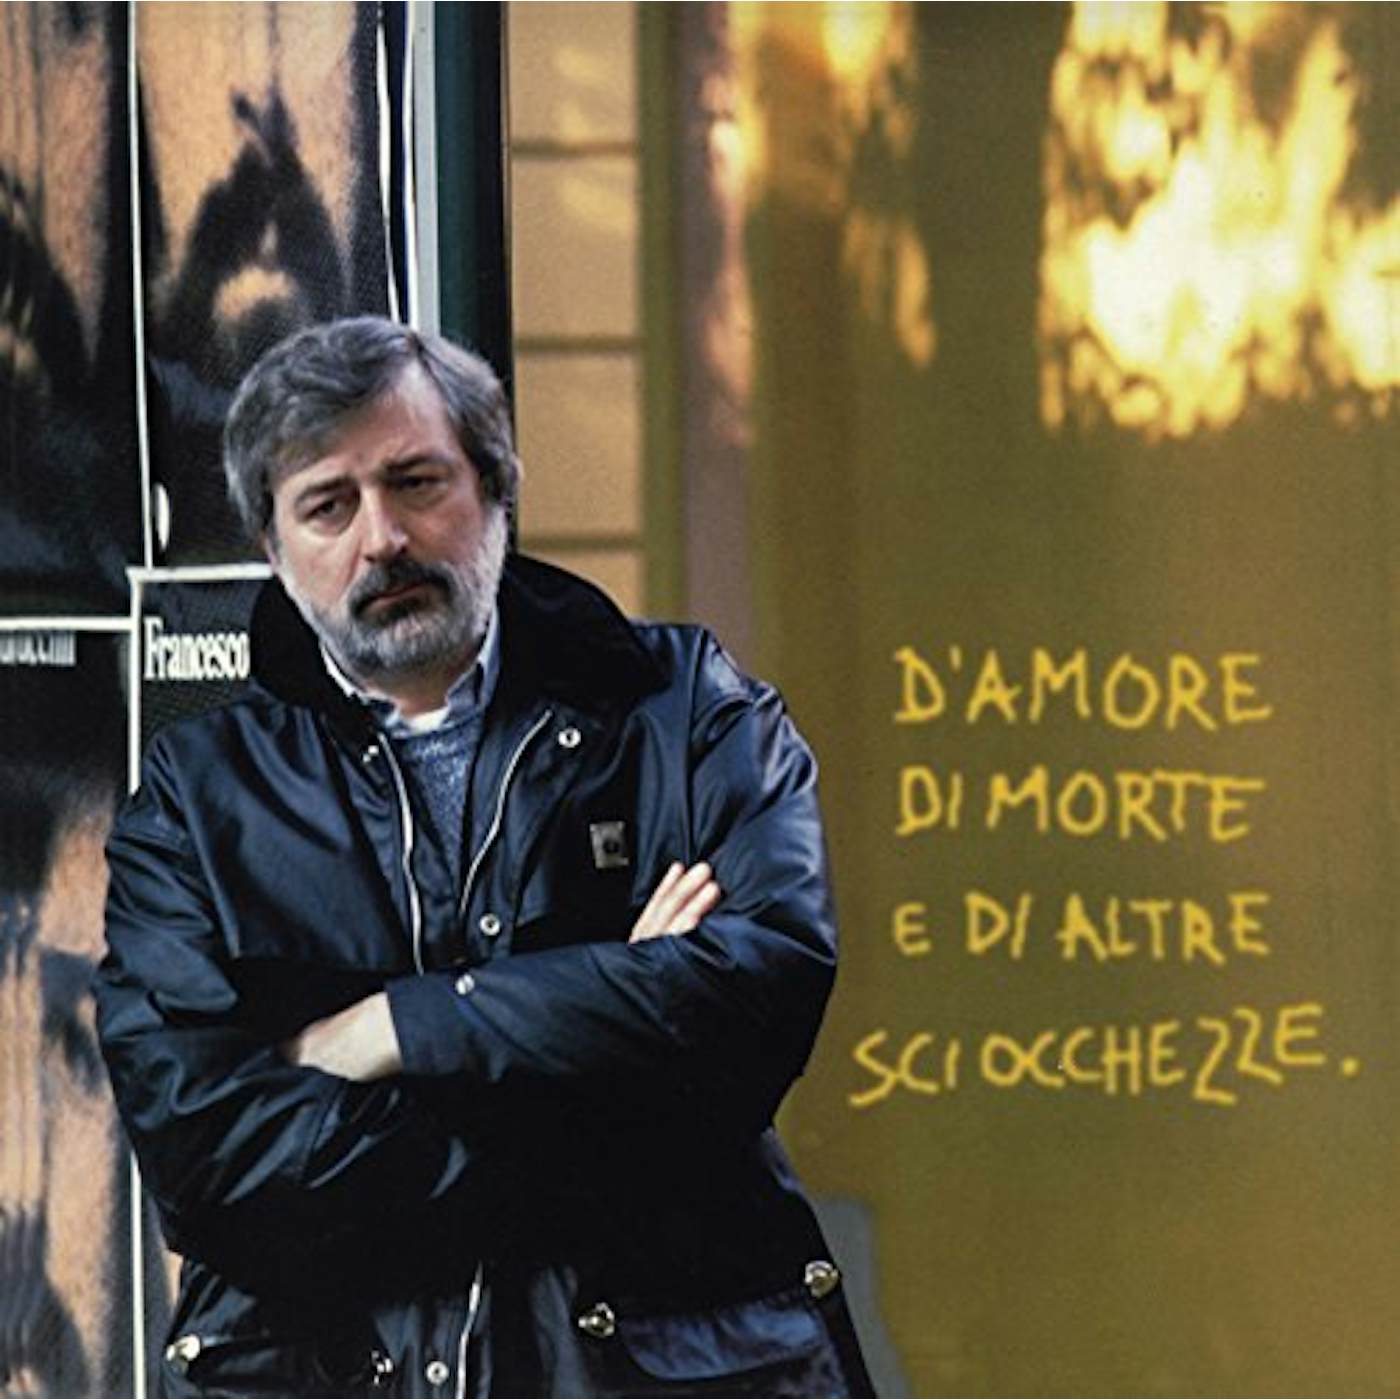 Francesco Guccini D'Amore Di Morte E Di Altre Sciocchezze Vinyl Record